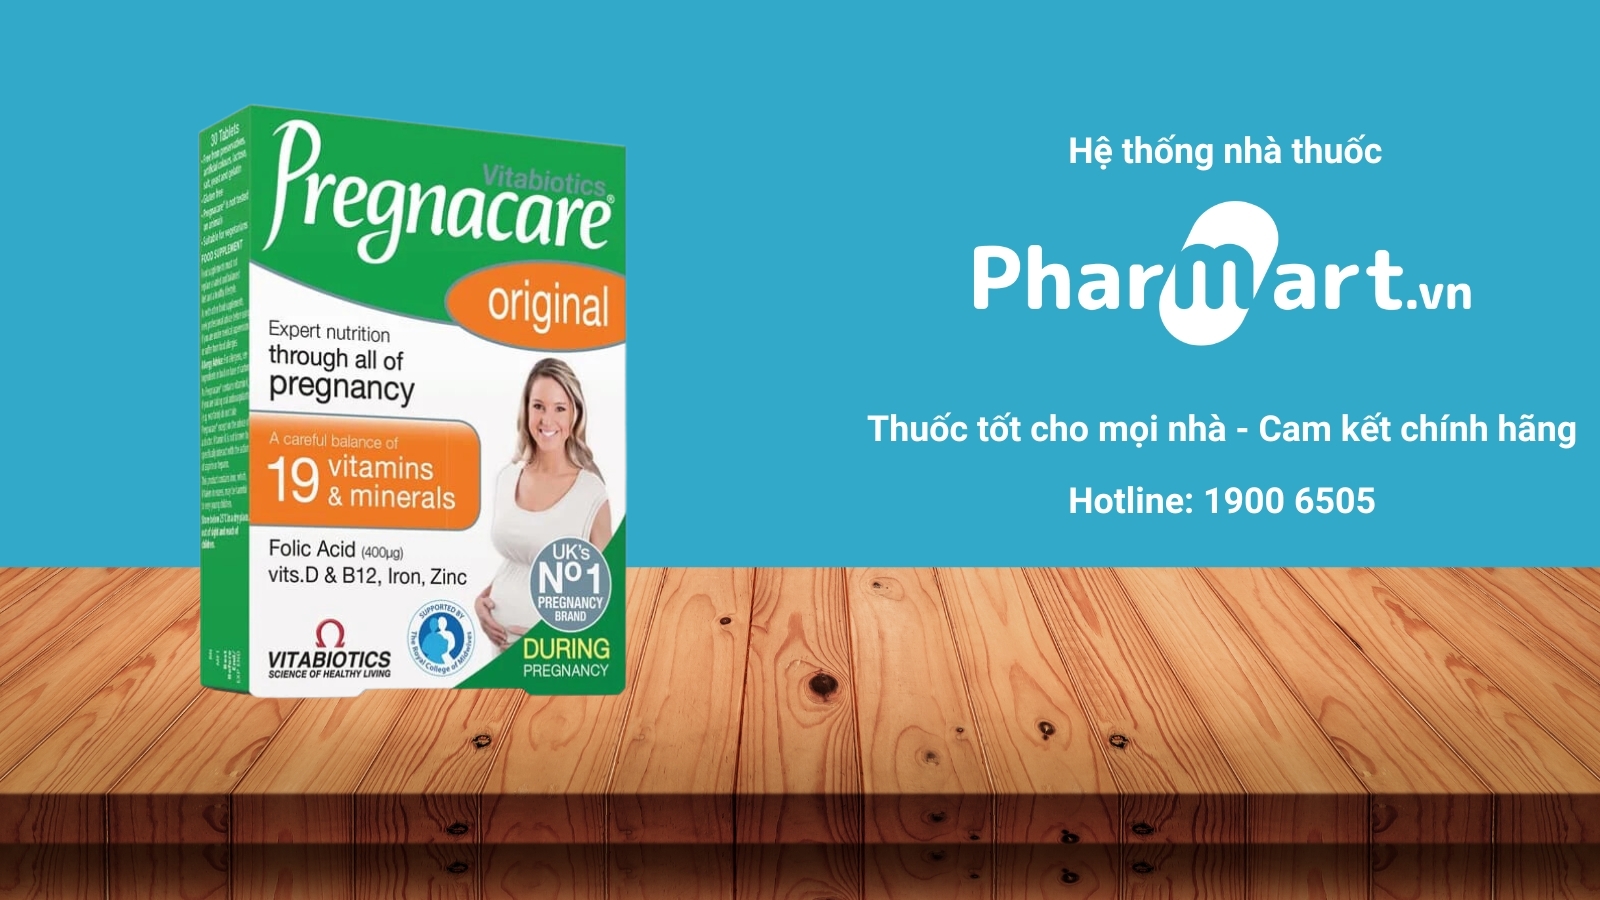 Mua ngay Pregnacare Original chính hãng tại Pharmart.vn